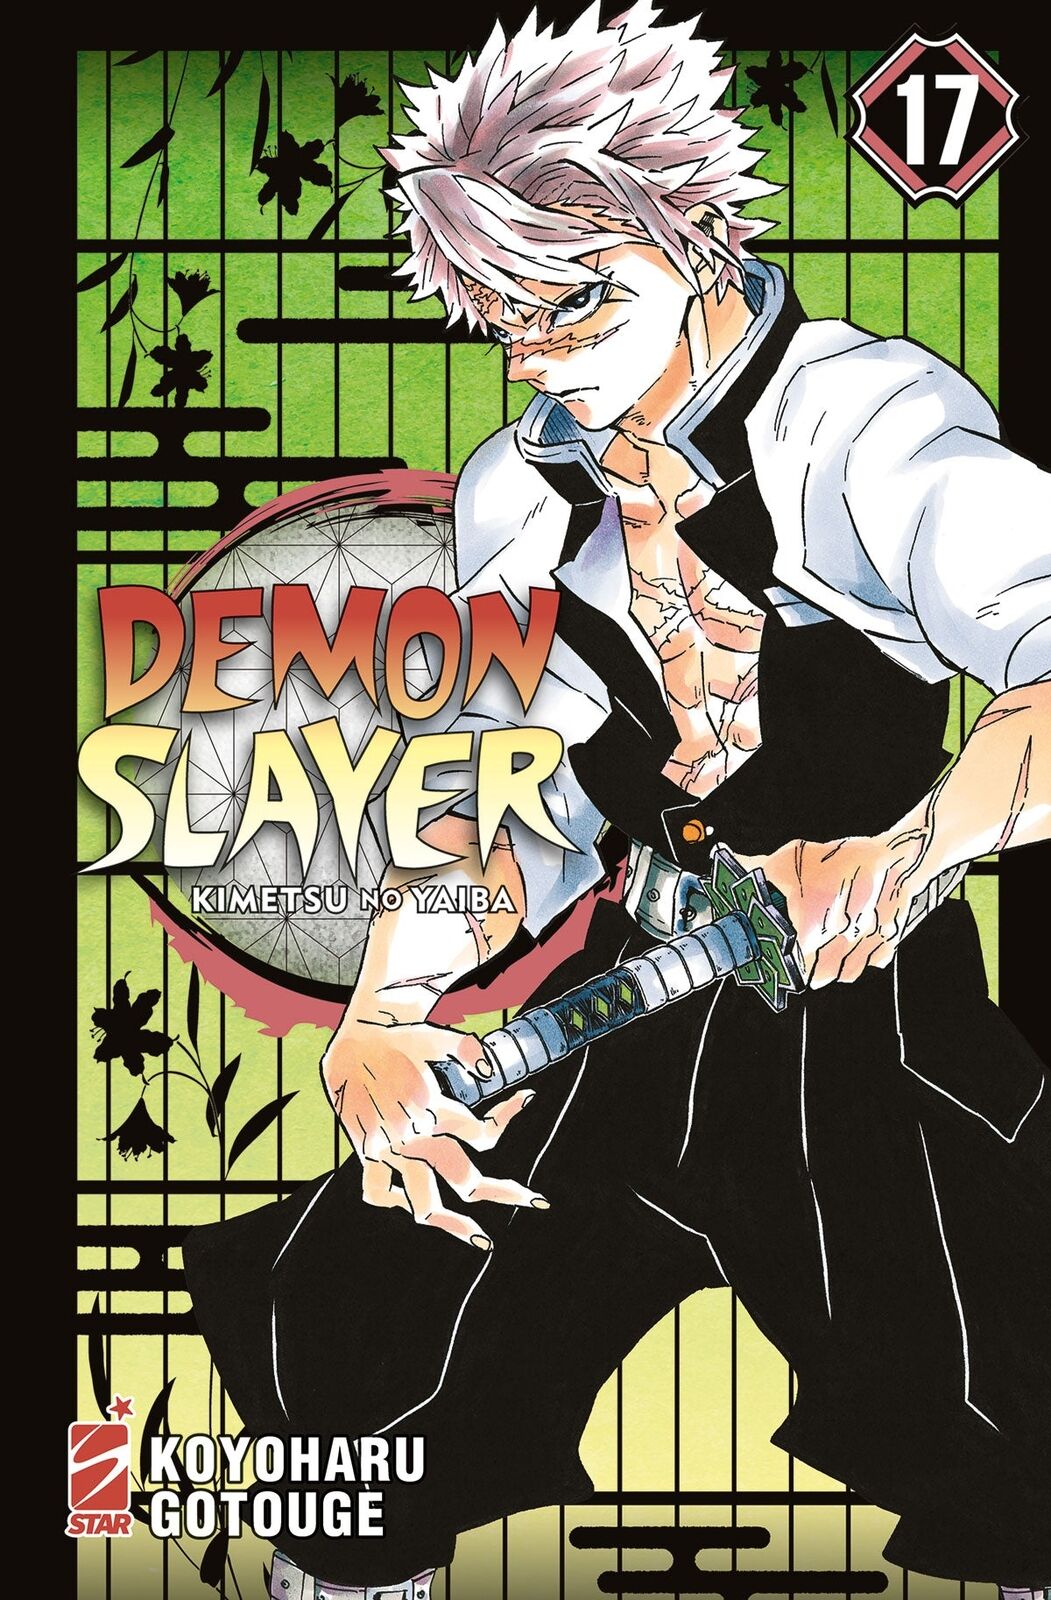 Demon Slayer Kimetsu no Yaiba 17 ITA nerd-pug